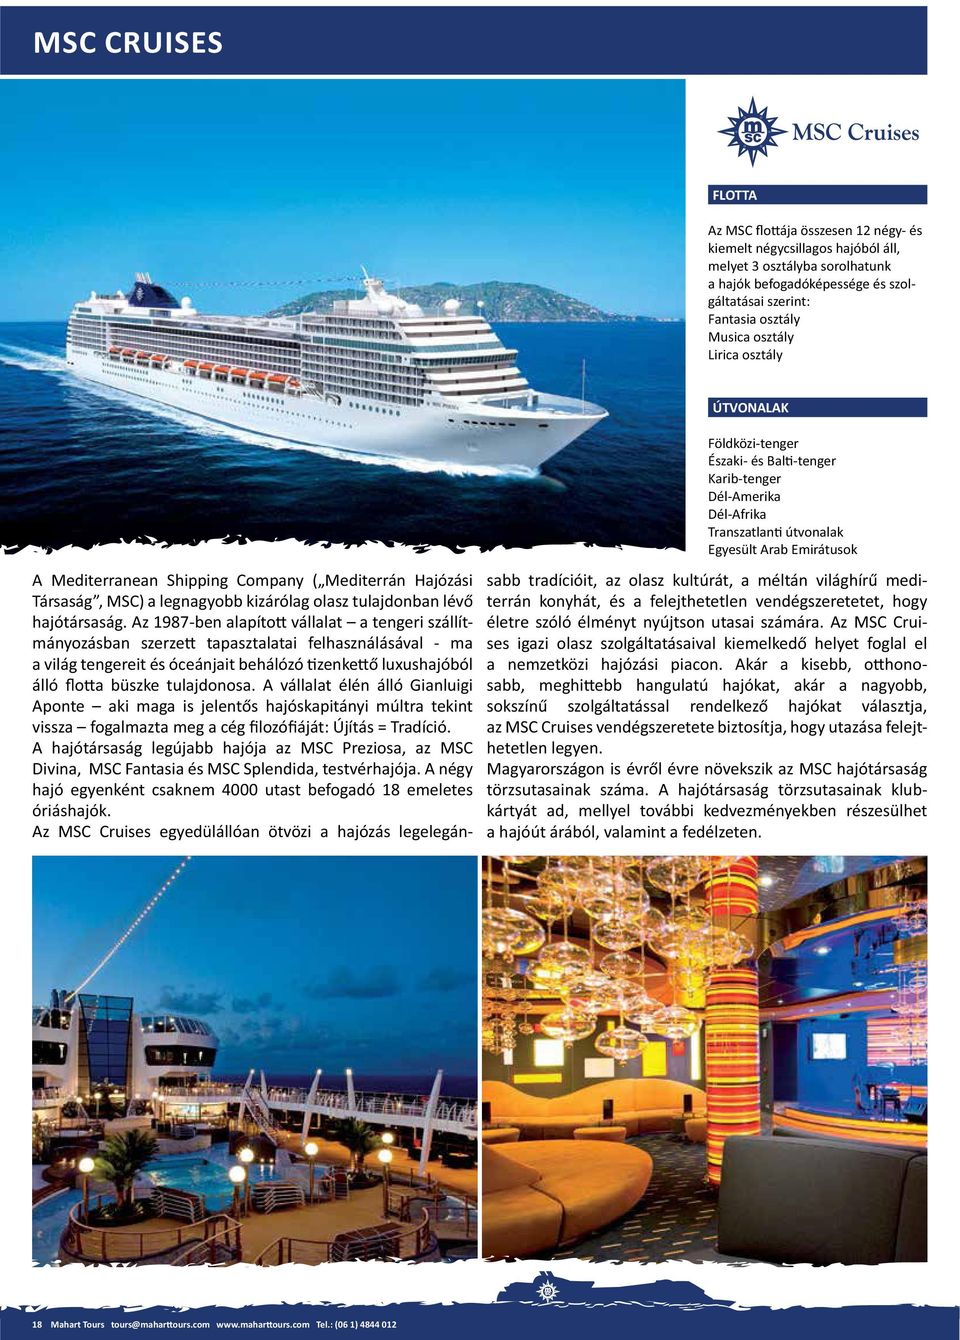 Az MSC Cruises egyedülállóan ötvözi a hajózás legelegán- Földközi-tenger Karib-tenger Dél-Amerika Dél-Afrika Egyesült Arab Emirátusok terrán konyhát, és a felejthetetlen vendégszeretetet, hogy életre